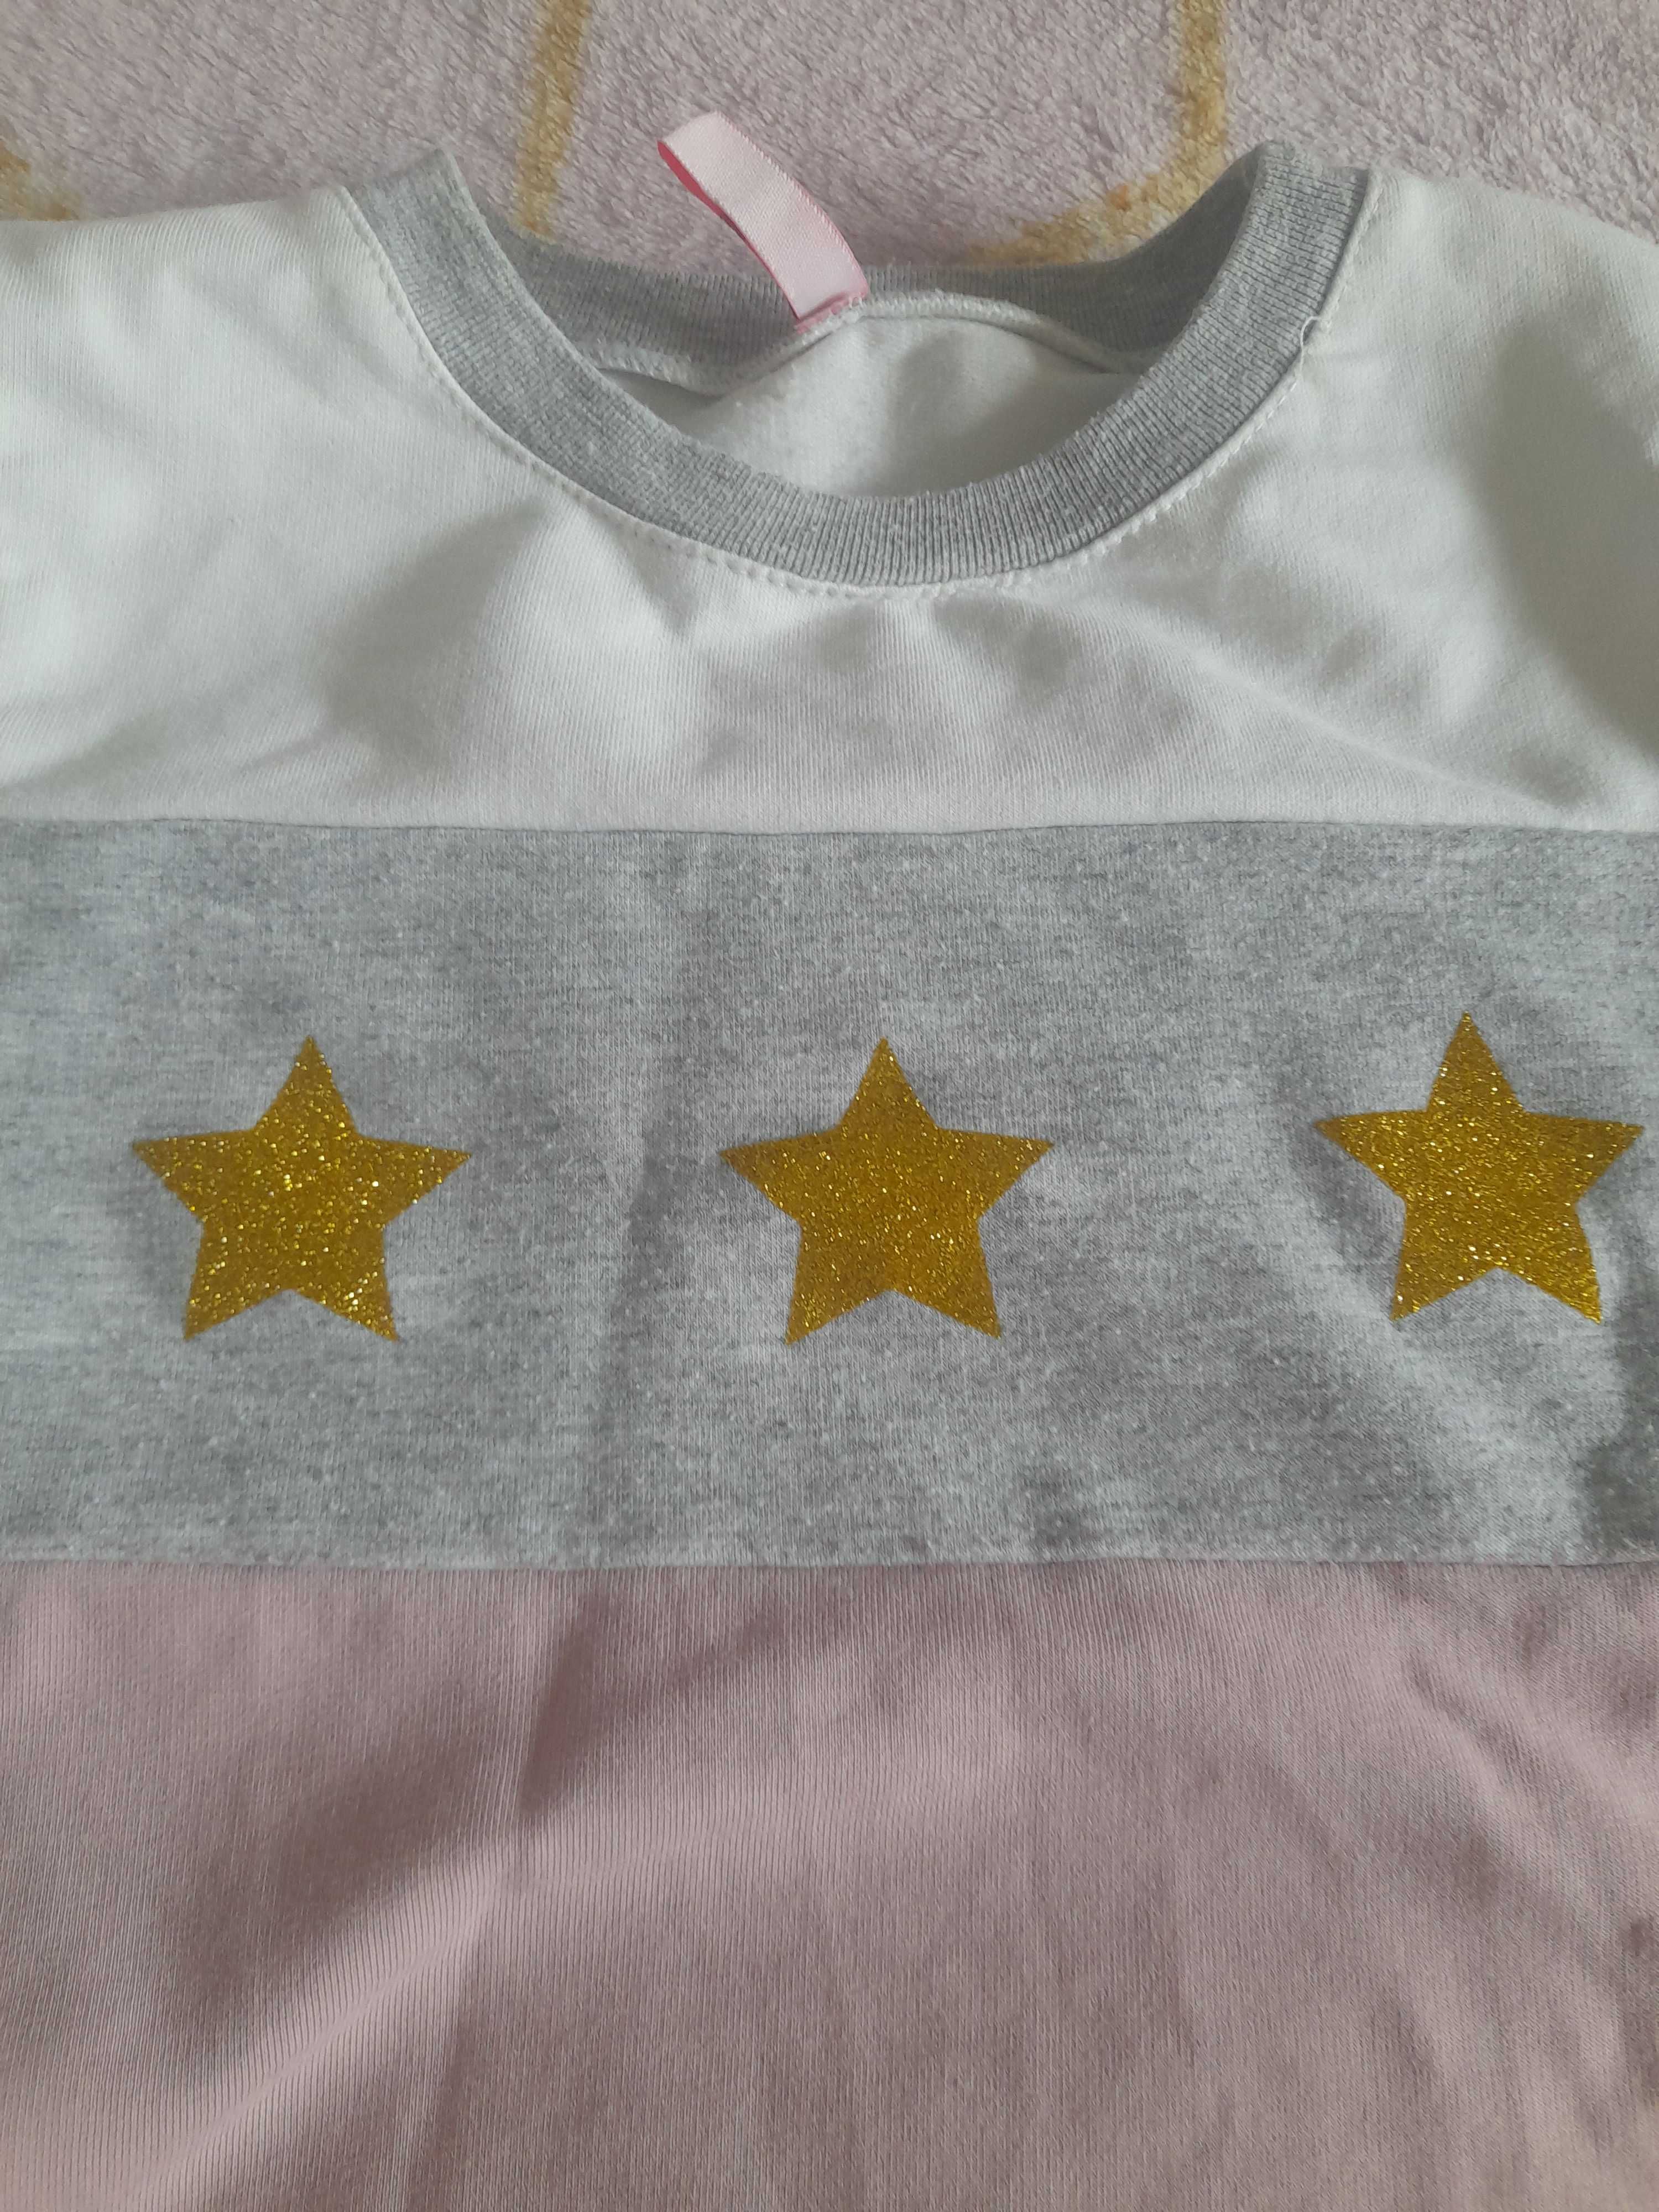 Спортивный костюм Vidoli розово-серый со звездами для девочки